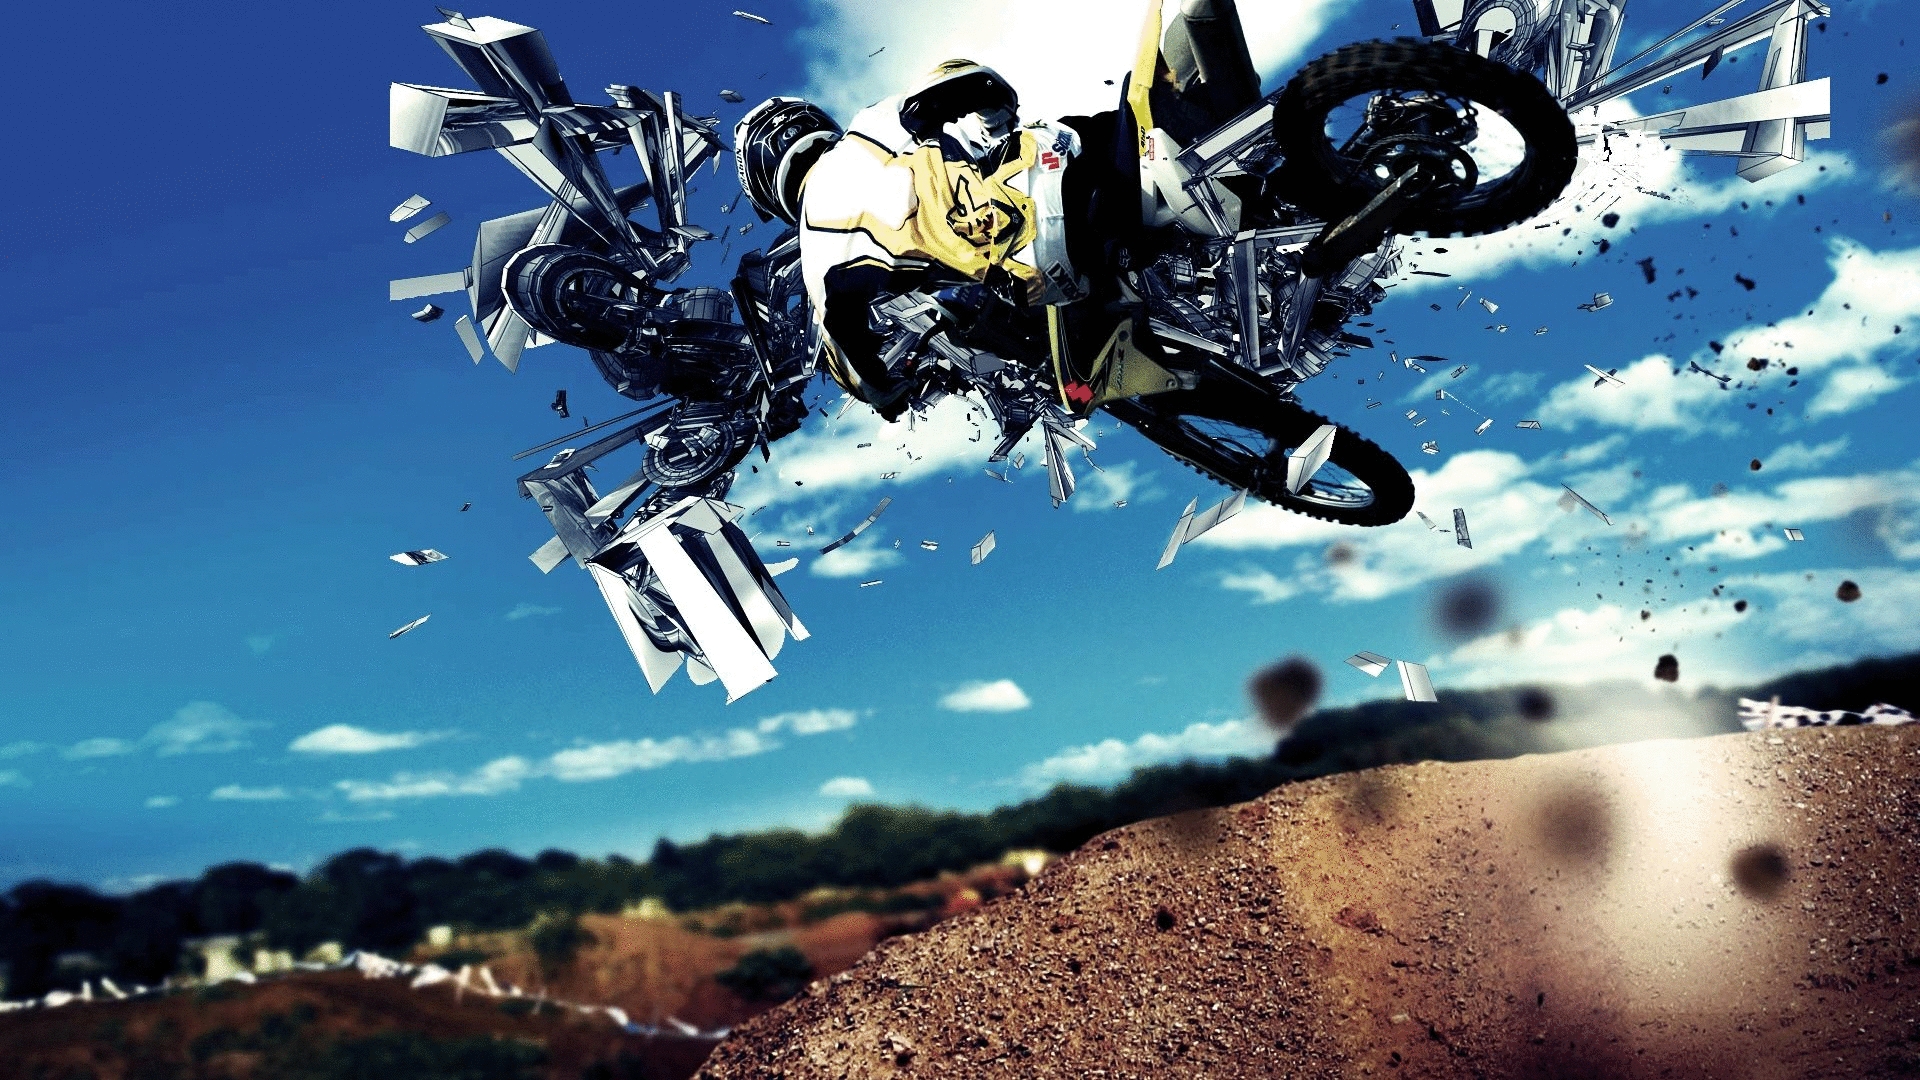 Dirt Bike Motocross Extreme Sport - Background Motocross - HD Wallpaper 